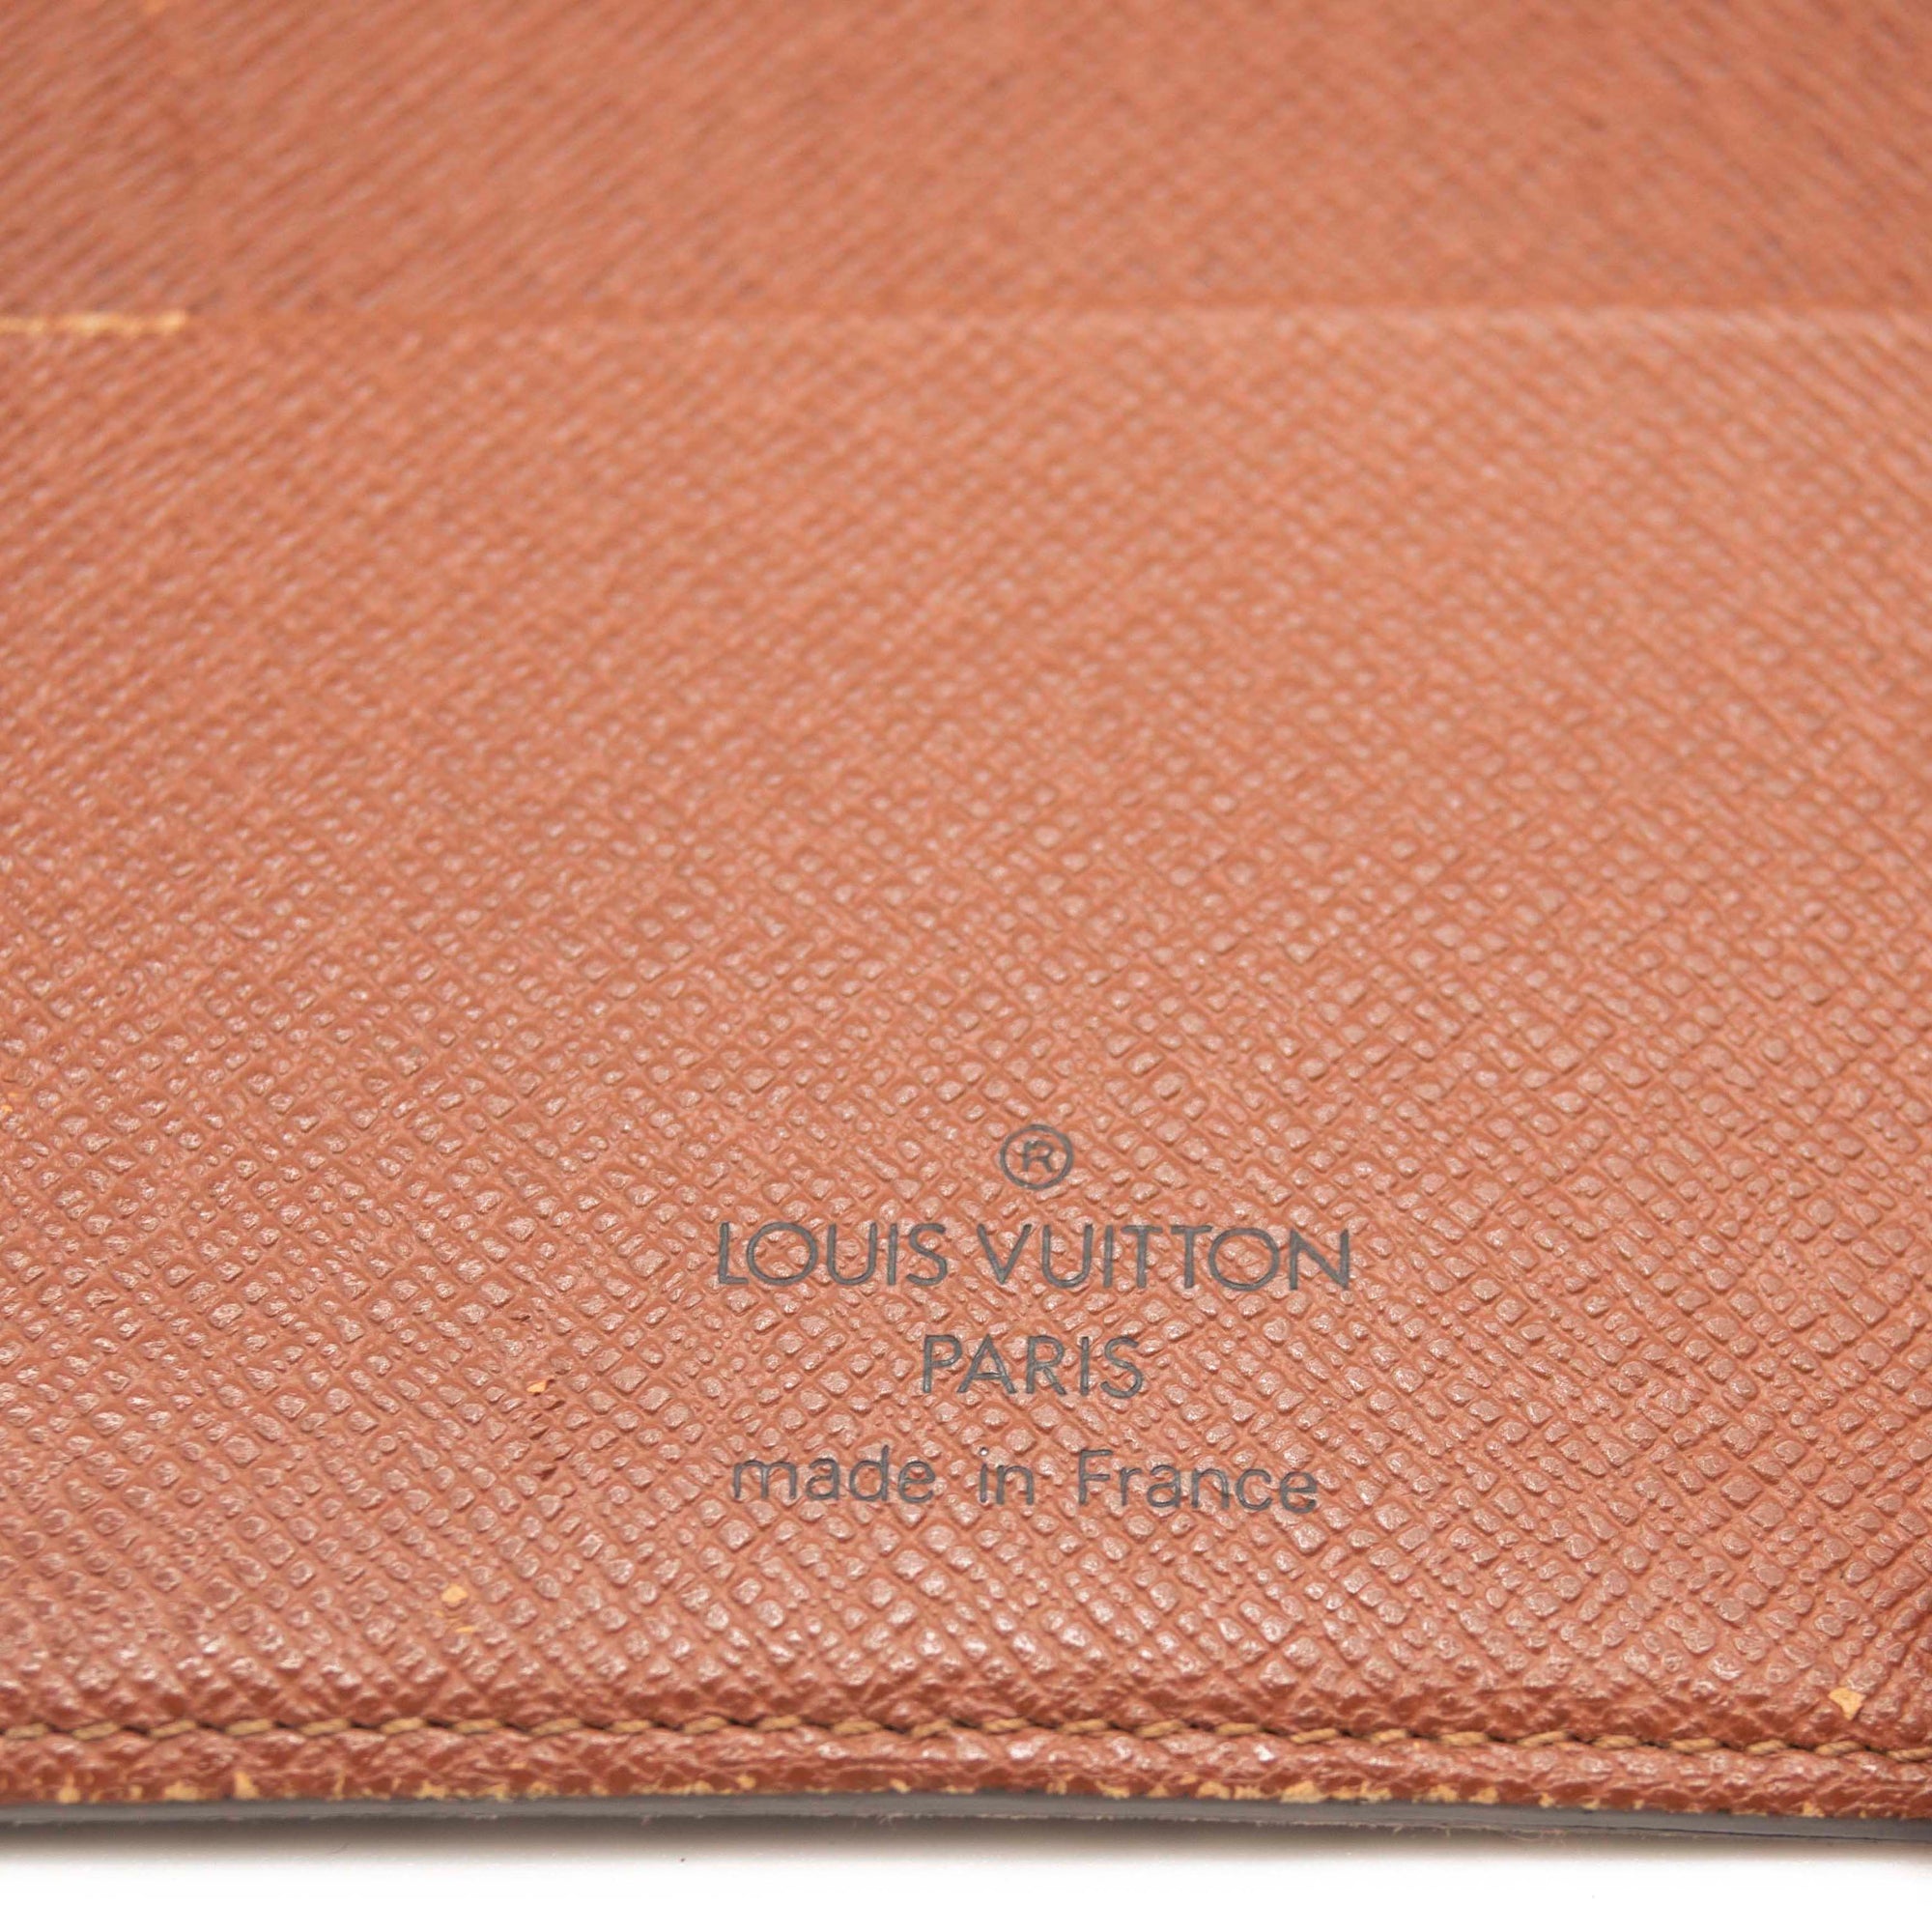 Louis Vuitton Monogram Canvas Medium Ring Agenda Cover Louis Vuitton